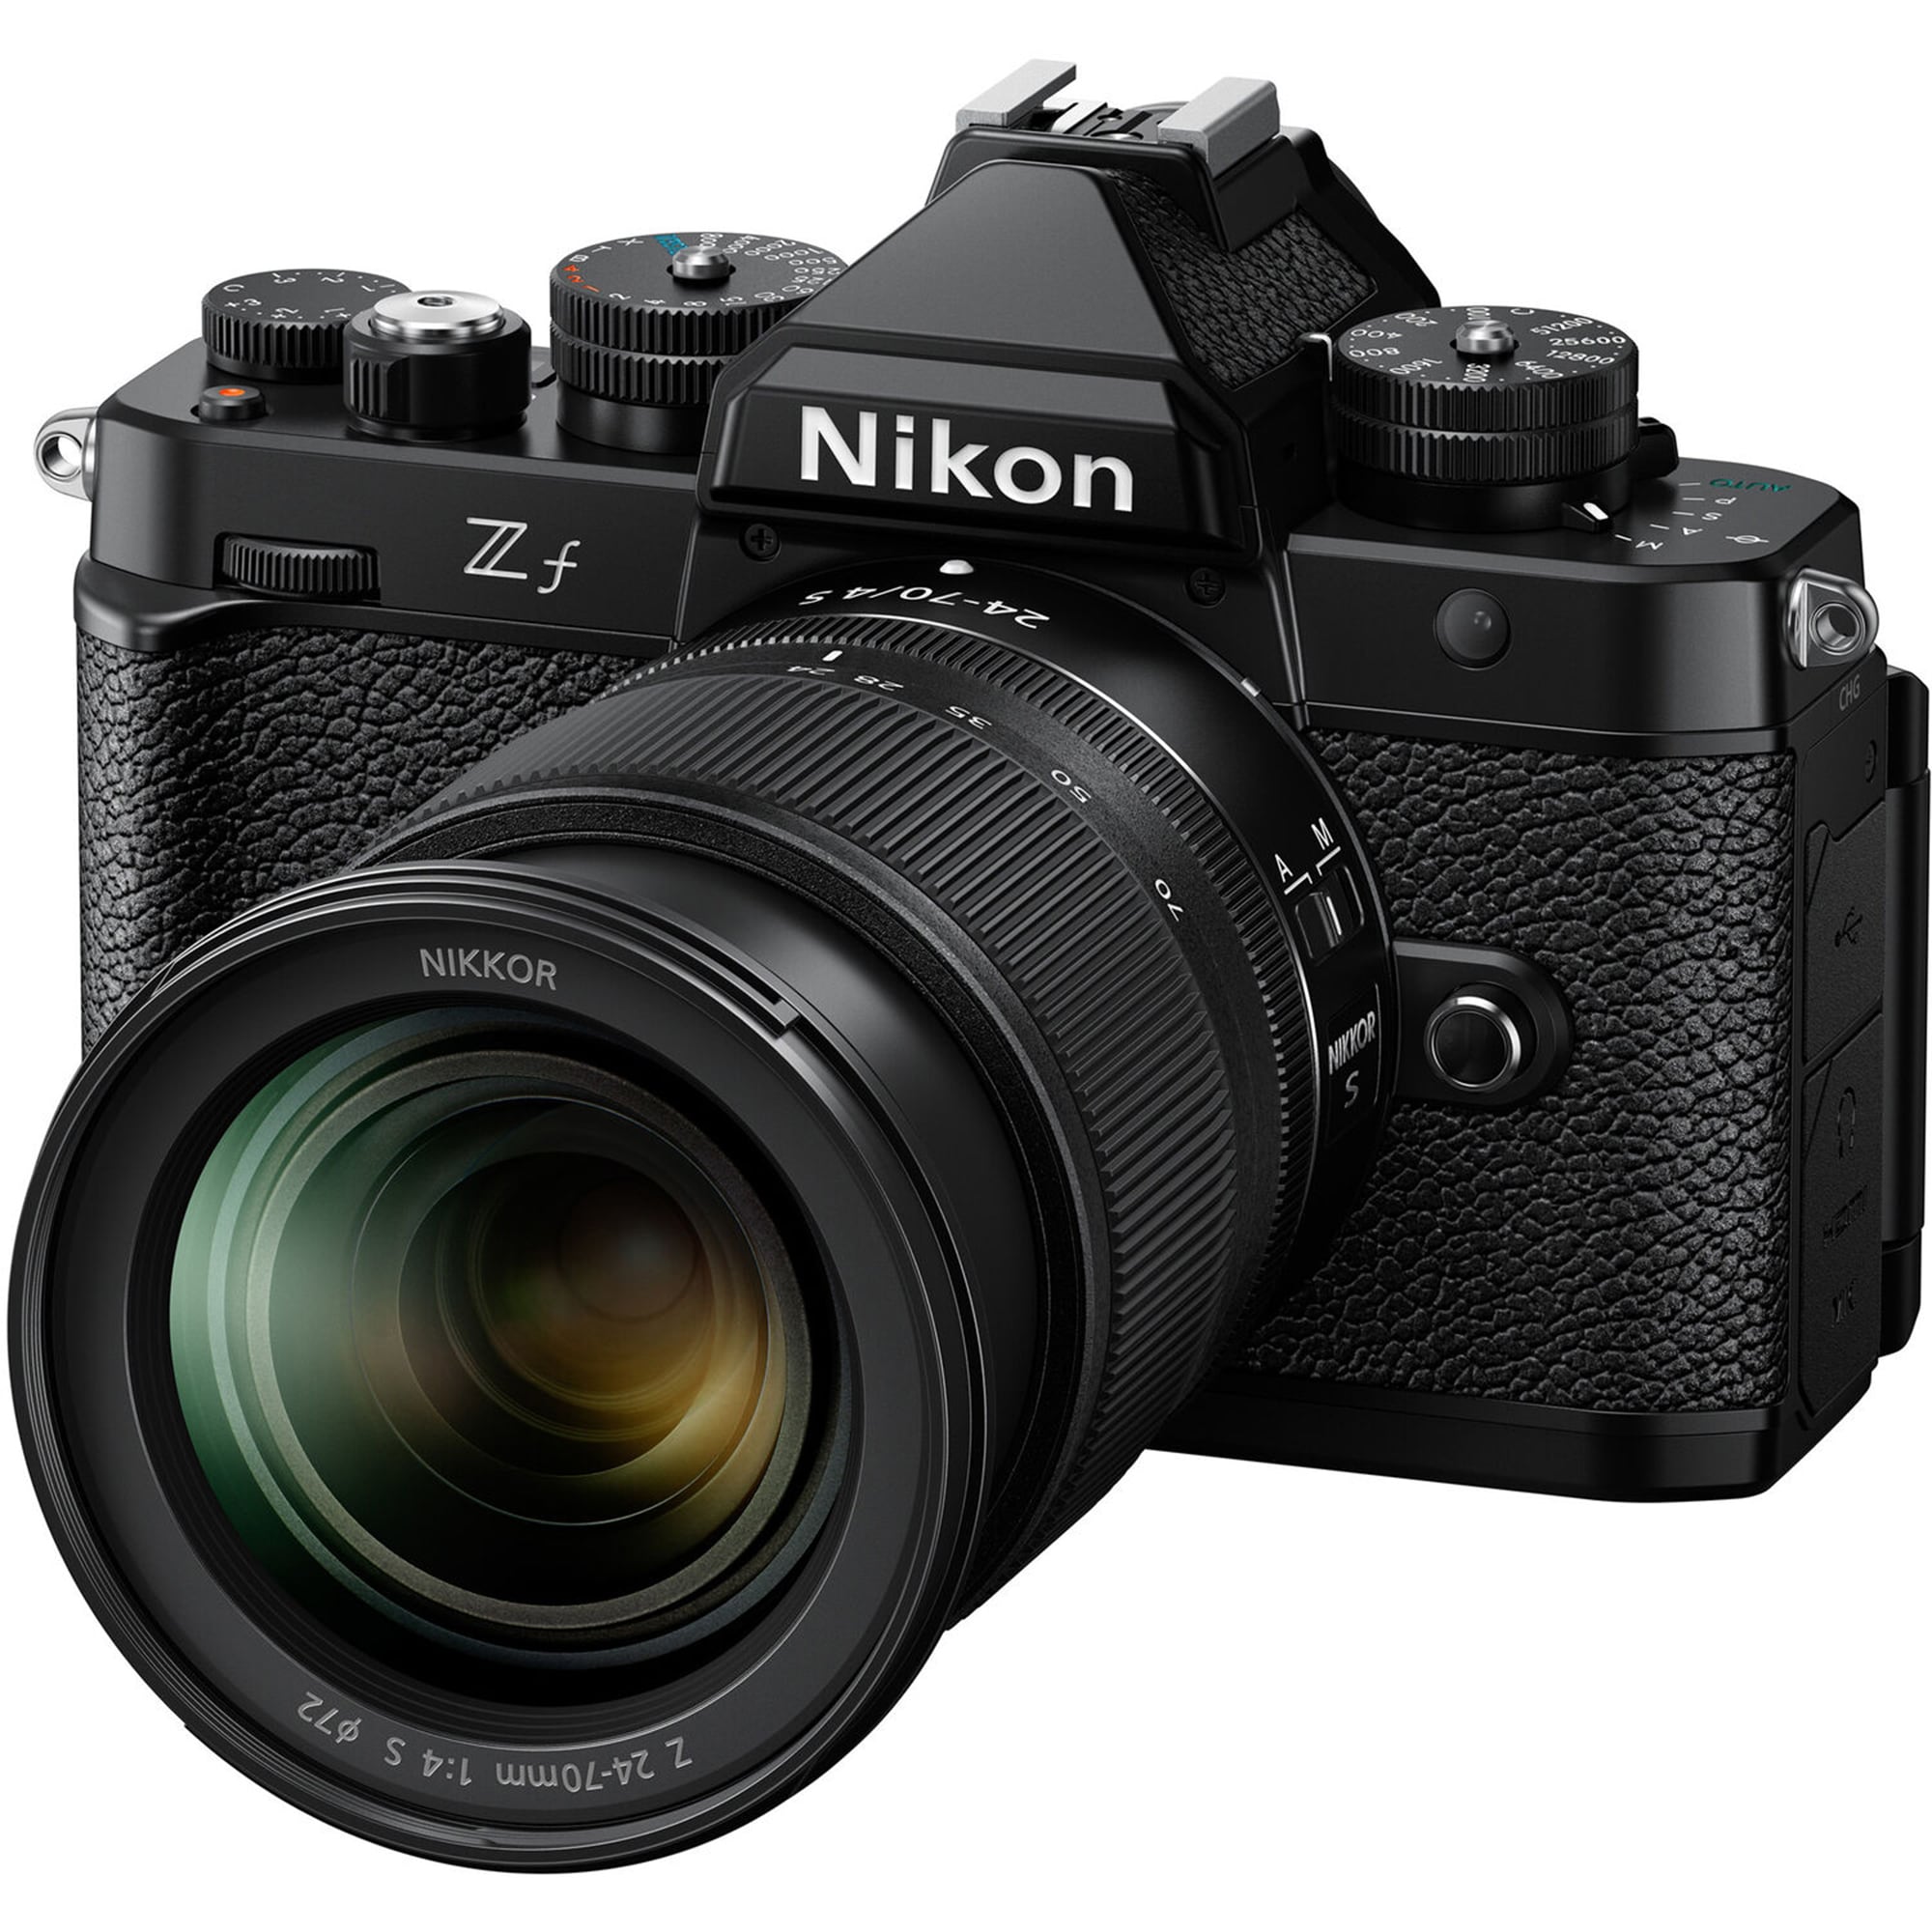 Nikon Z f + Nikkor 24-70mm f/4